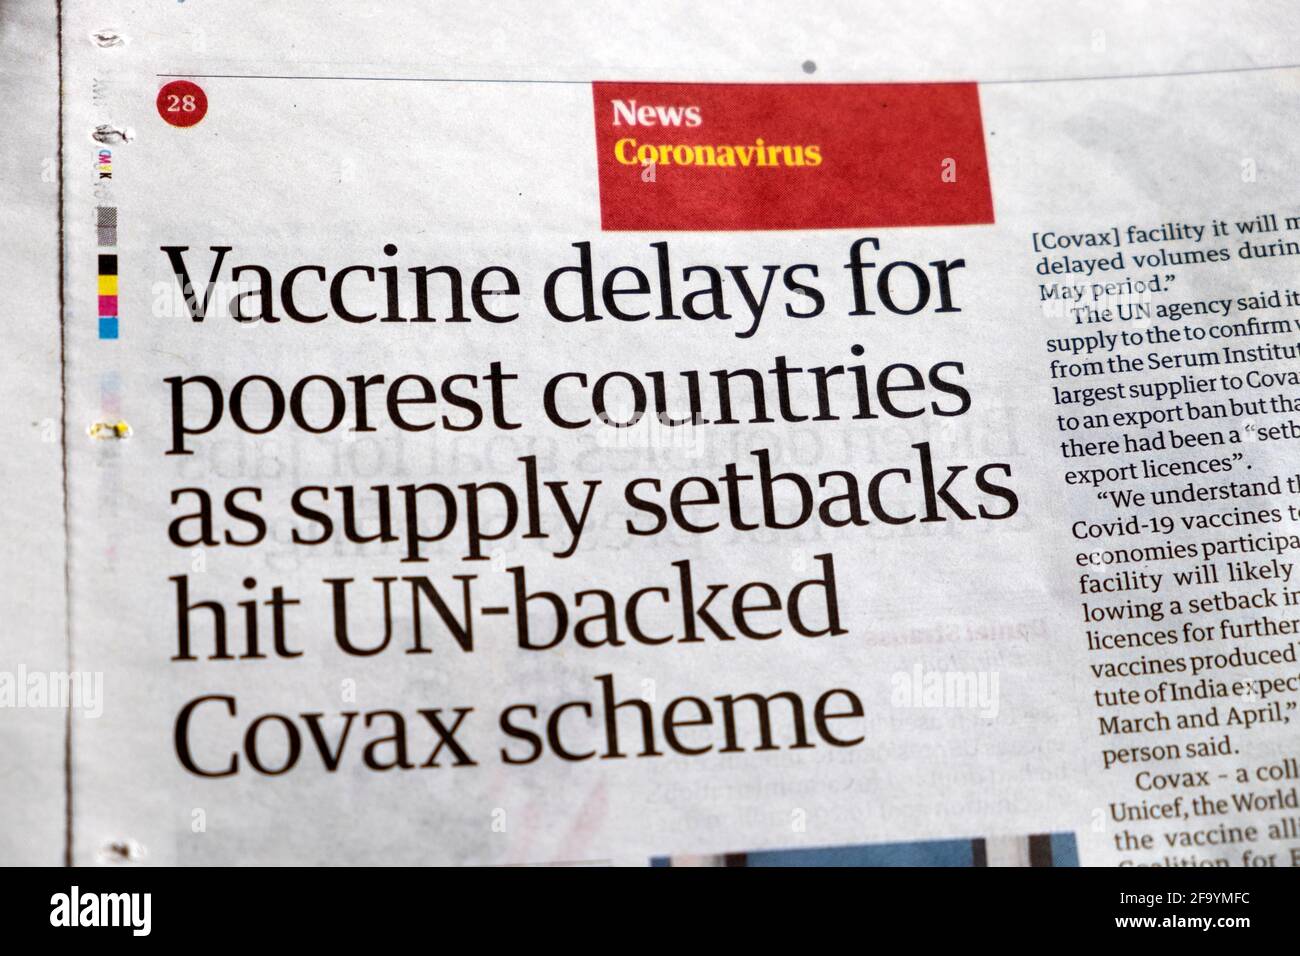 "I ritardi nei vaccini per i paesi più poveri, in quanto le battute d'arresto dell'offerta hanno colpito i paesi sostenuti dalle Nazioni Unite Covax Scheme' Guardian Newspaper headline article 26.3.2021 Londra Inghilterra UK Foto Stock